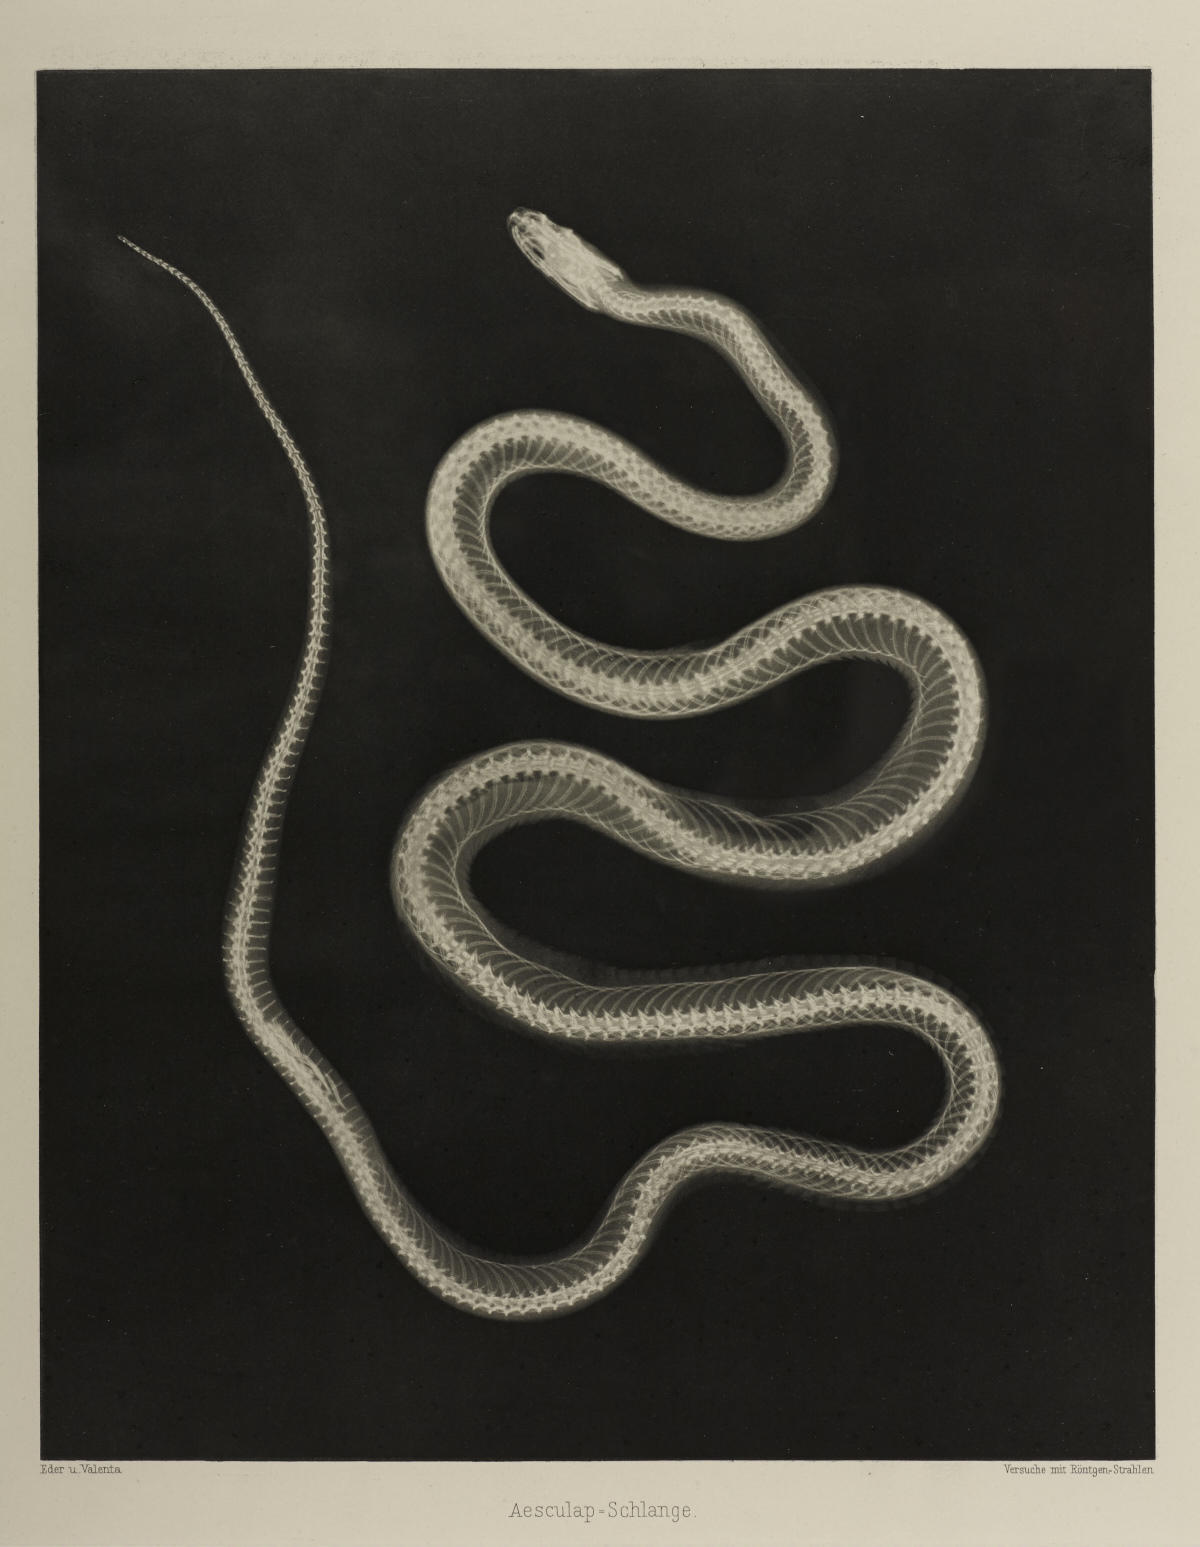 JOSEF MARIA EDER (1855–1944) / EDUARD VALENTA (1857–1937) ‘Versuche über Photographie mittelst der Röntgen'schen Strahlen’, Vienna 1896